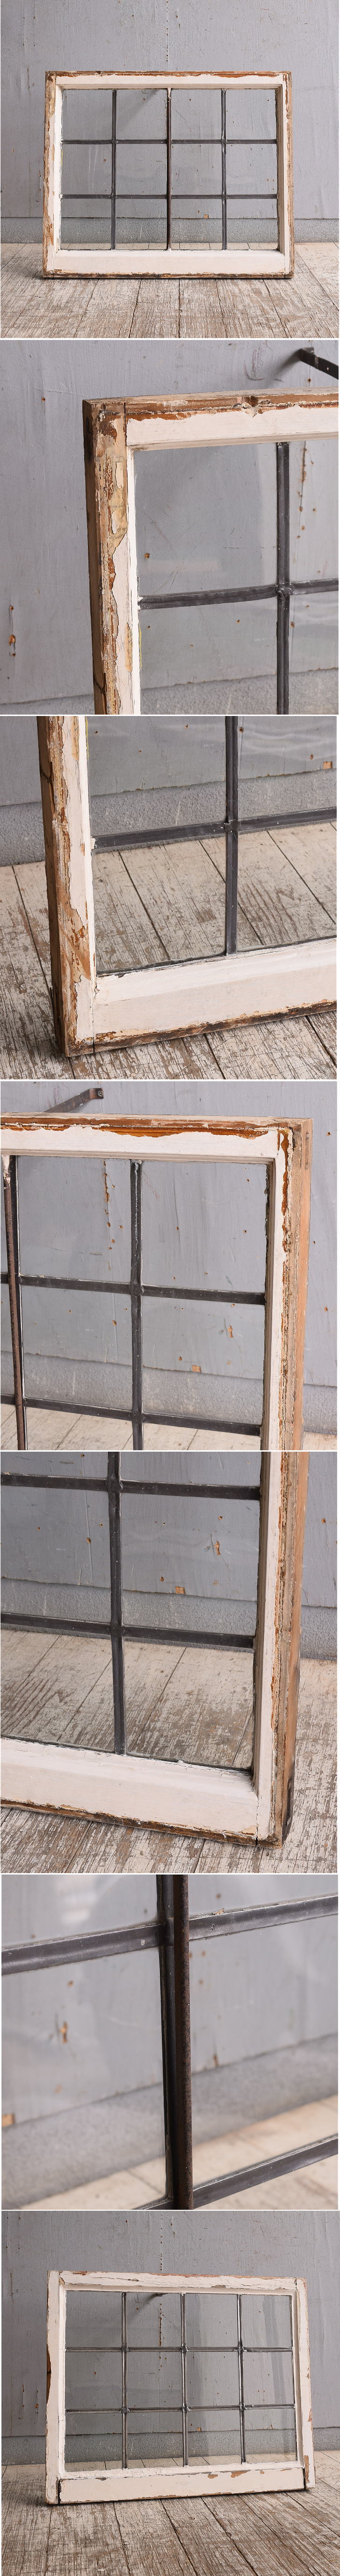 イギリス アンティーク 窓 無色透明 10768